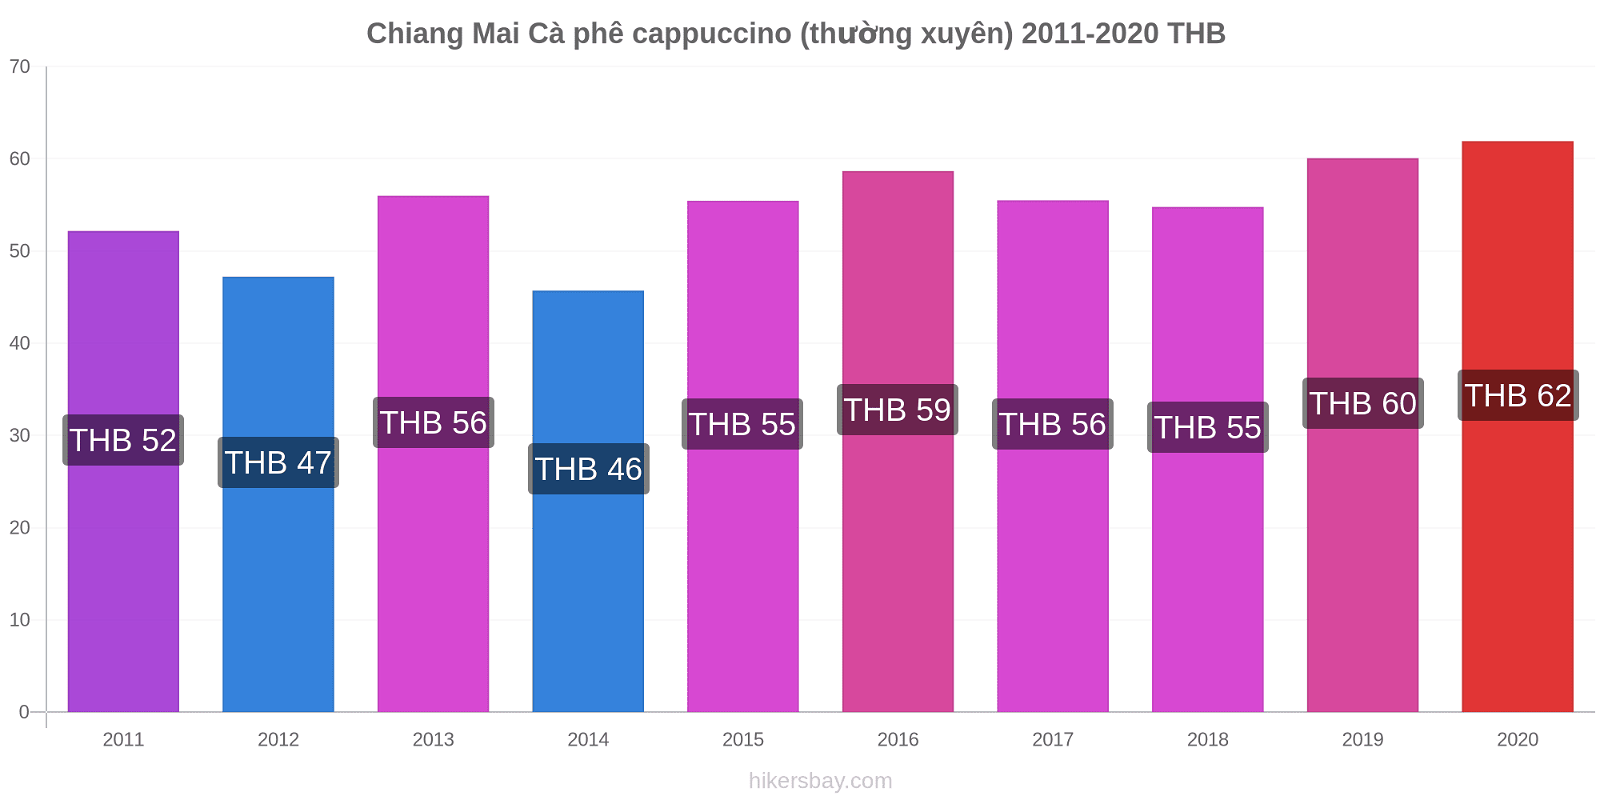 Chiang Mai thay đổi giá Cà phê cappuccino (thường xuyên) hikersbay.com